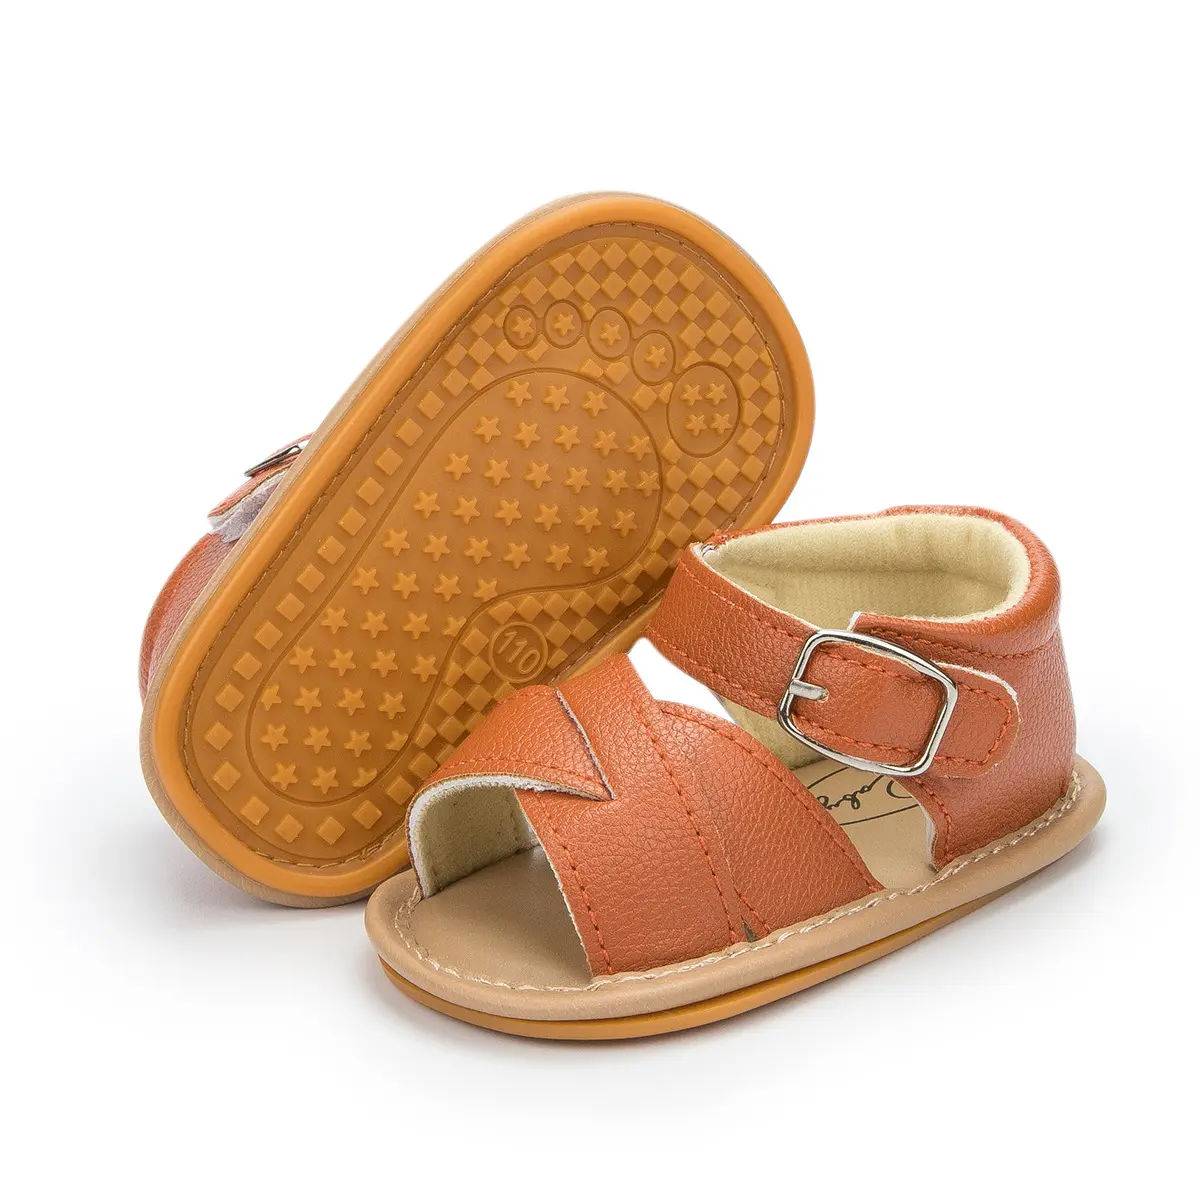 Dimi — chaussures d'extérieur pour bébés en cuir, semelle en caoutchouc antidérapante, souple, sandales d'été pour enfants garçons et filles, 2021